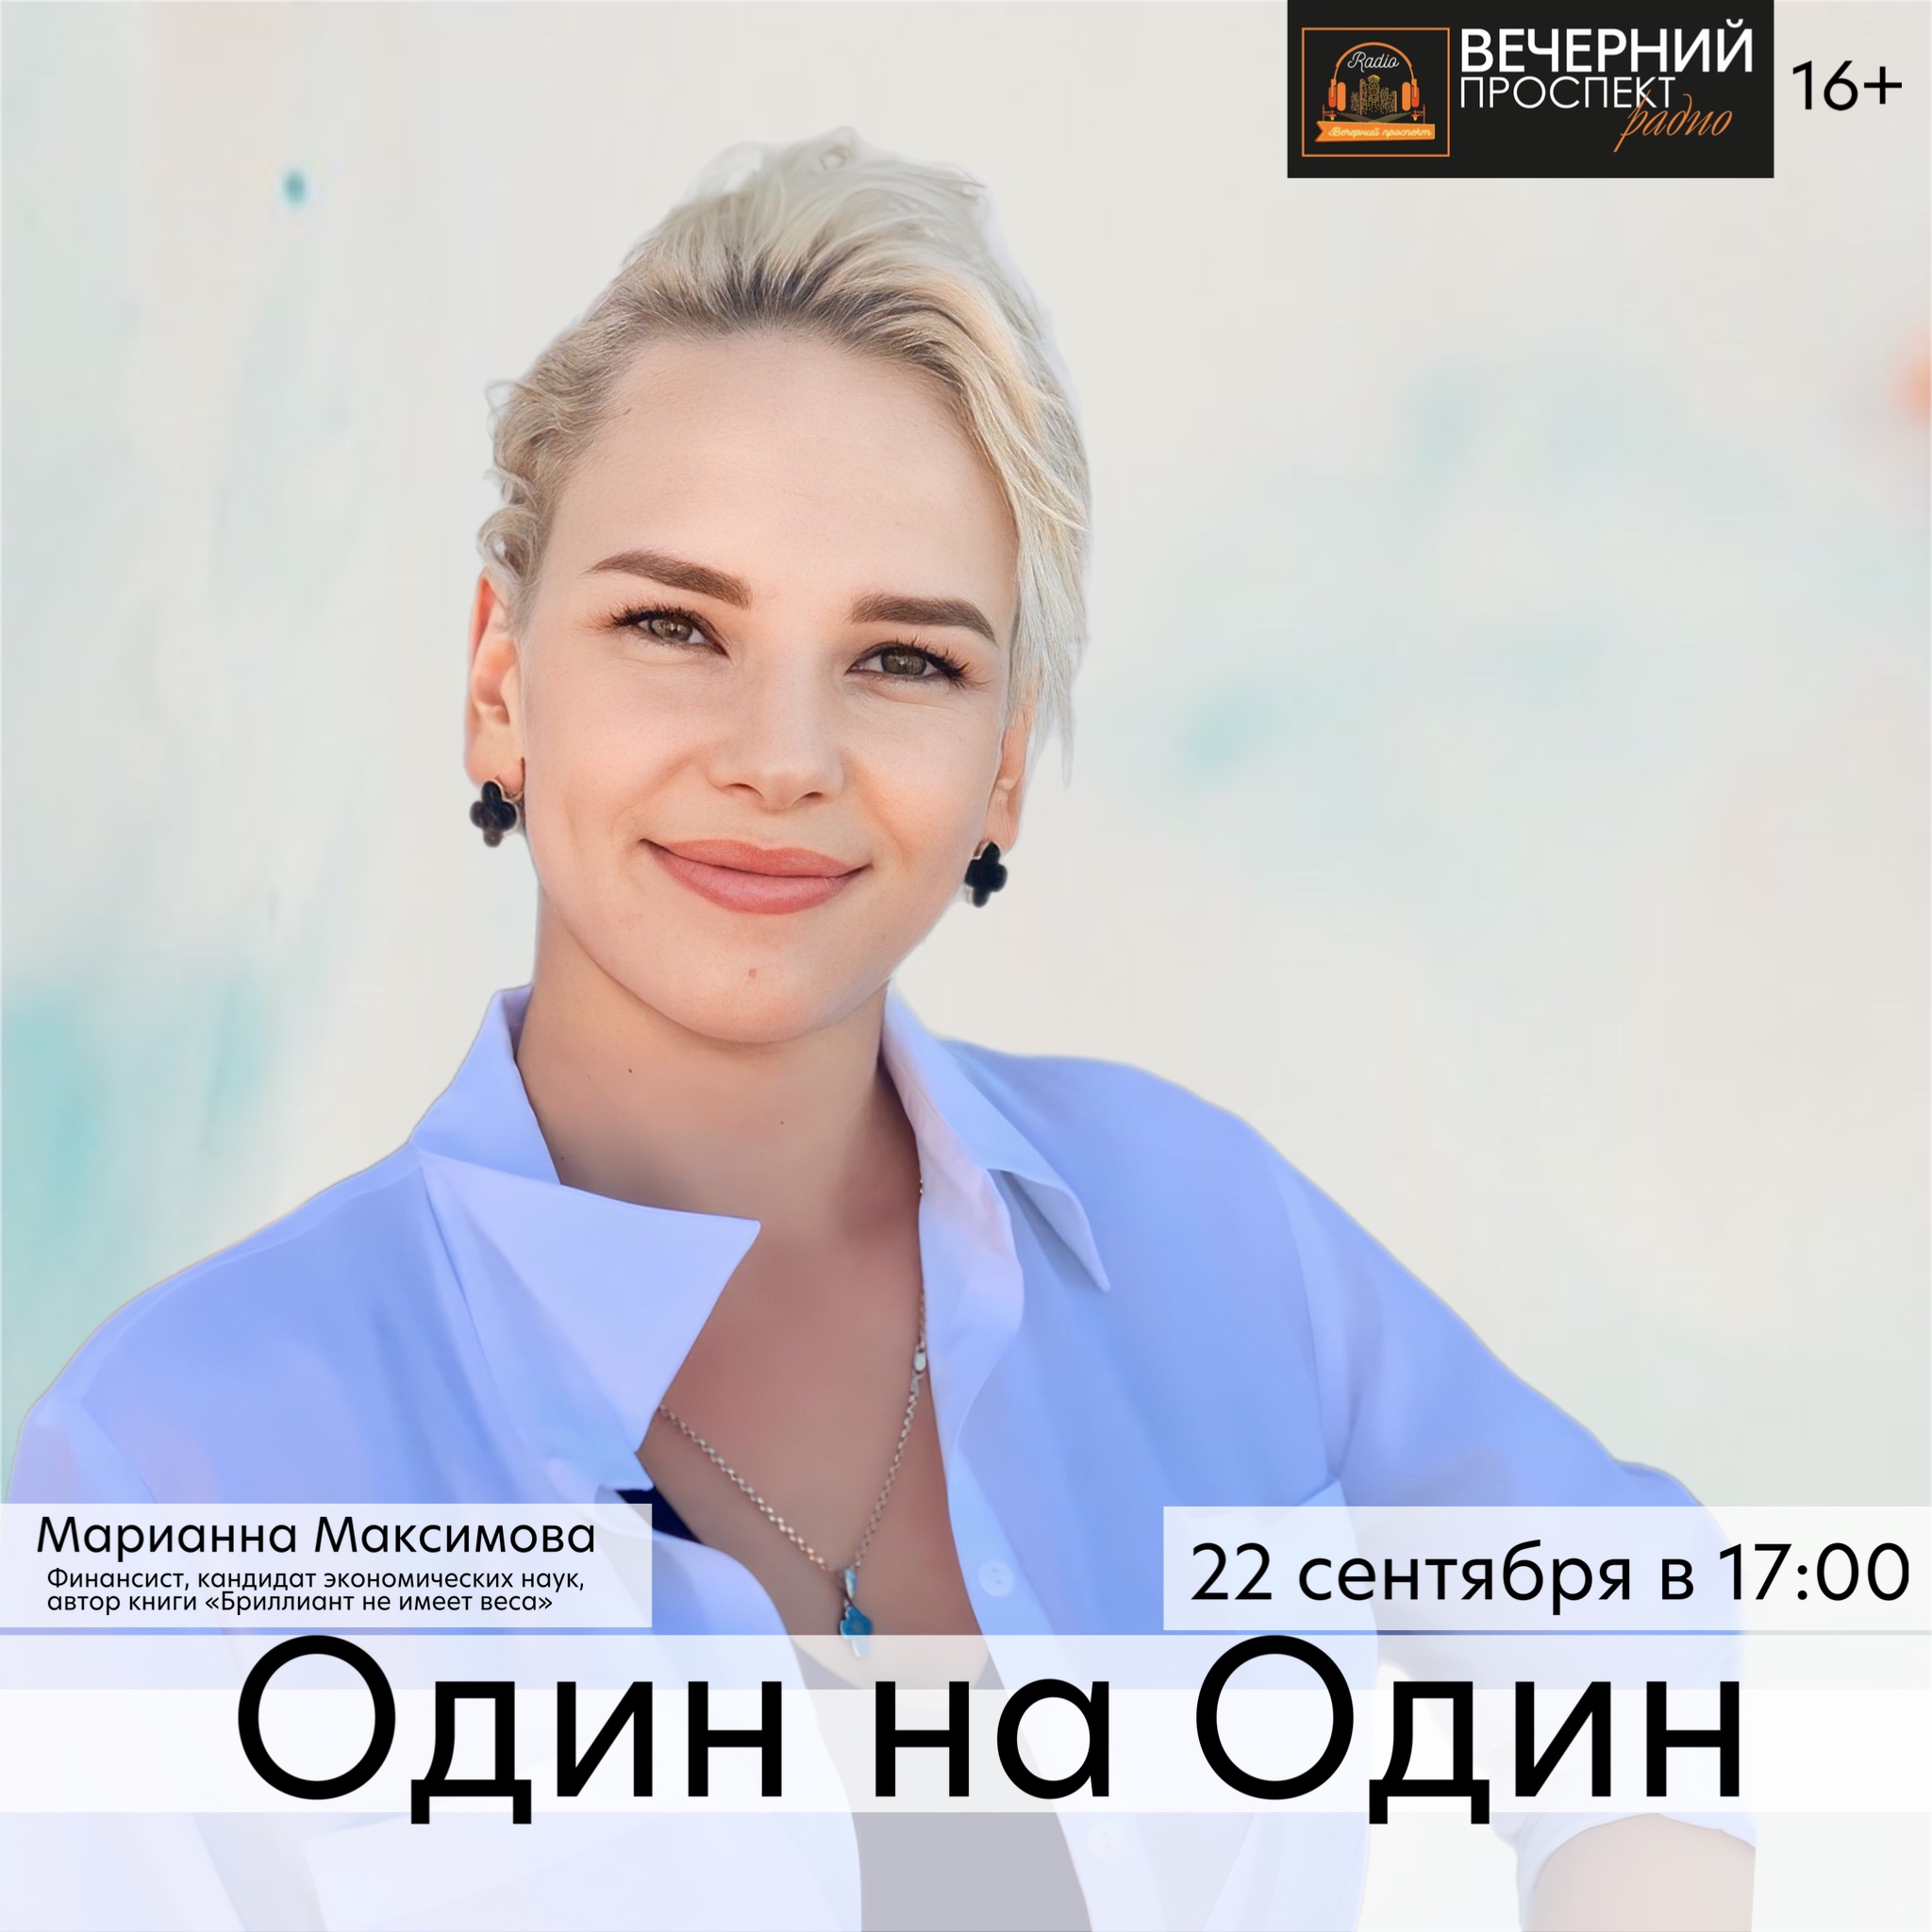 🎧 22 сентября с 17:00 до 18:00 в эфире программы «Один на Один» финансист, кандидат экономических наук и автор книги «Бриллиант не имеет веса» Марианна Максимова.